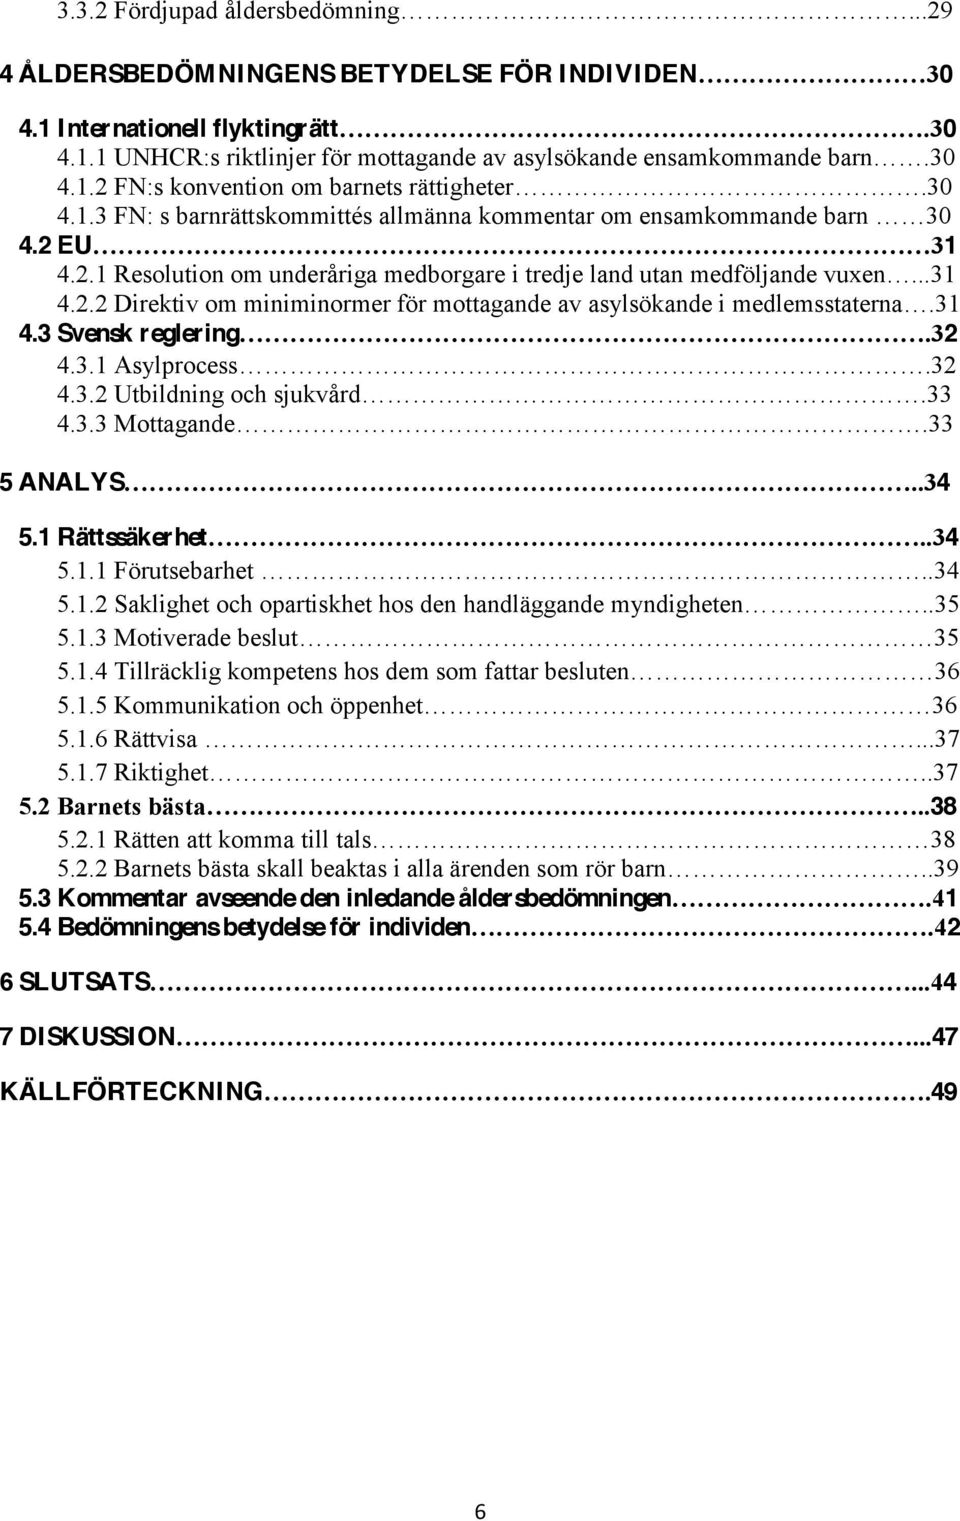 3 Svensk reglering 2 4.3.1 Asylprocess 2 4.3.2 Utbildning och sjukvård 3 4.3.3 Mottagande 3 5 ANALYS 4 5.1 Rättssäkerhet 4 5.1.1 Förutsebarhet 4 5.1.2 Saklighet och opartiskhet hos den handläggande myndigheten 5 5.